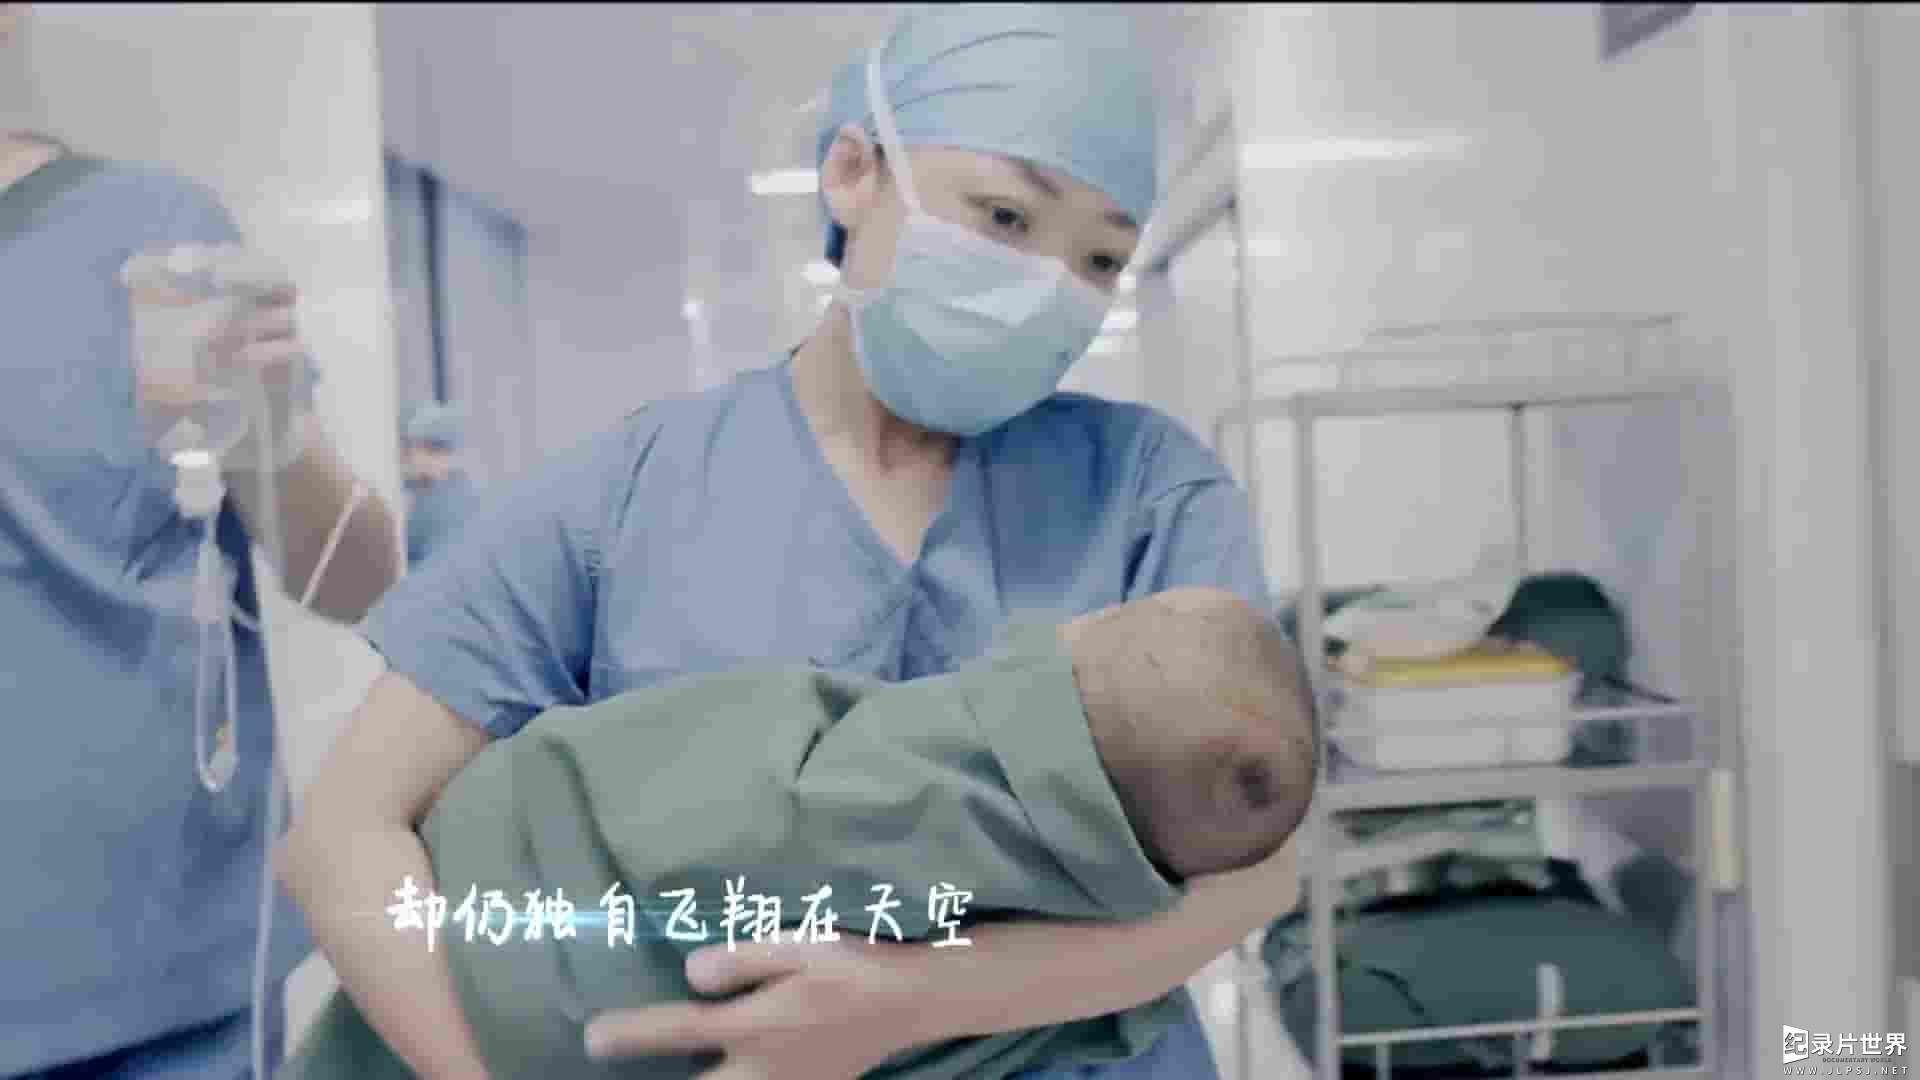 国产纪录片《中国医生 The Chinese Doctor 2019》全9集